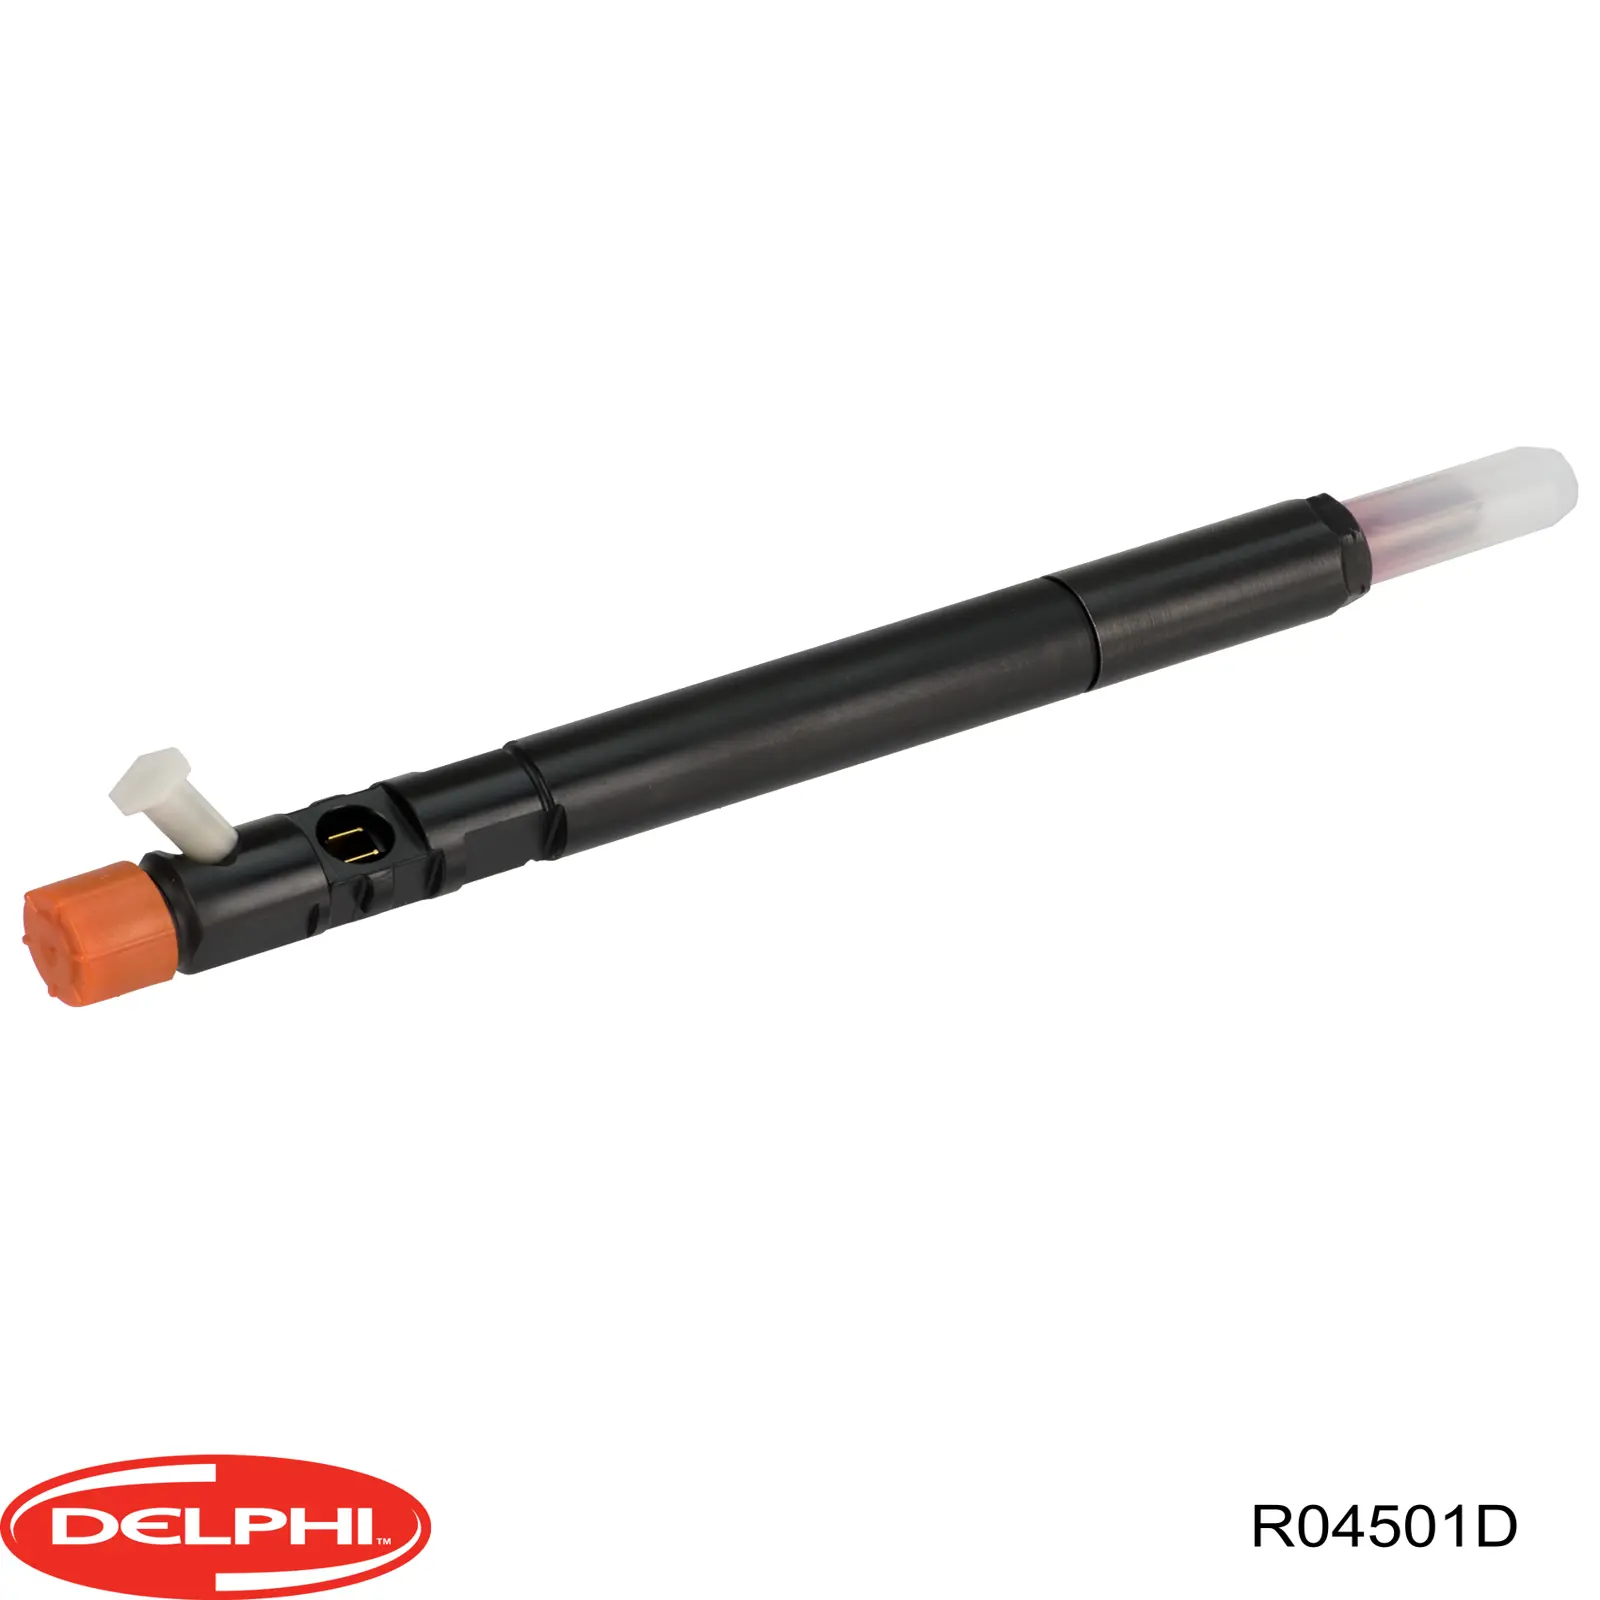 R04501D Delphi inyector